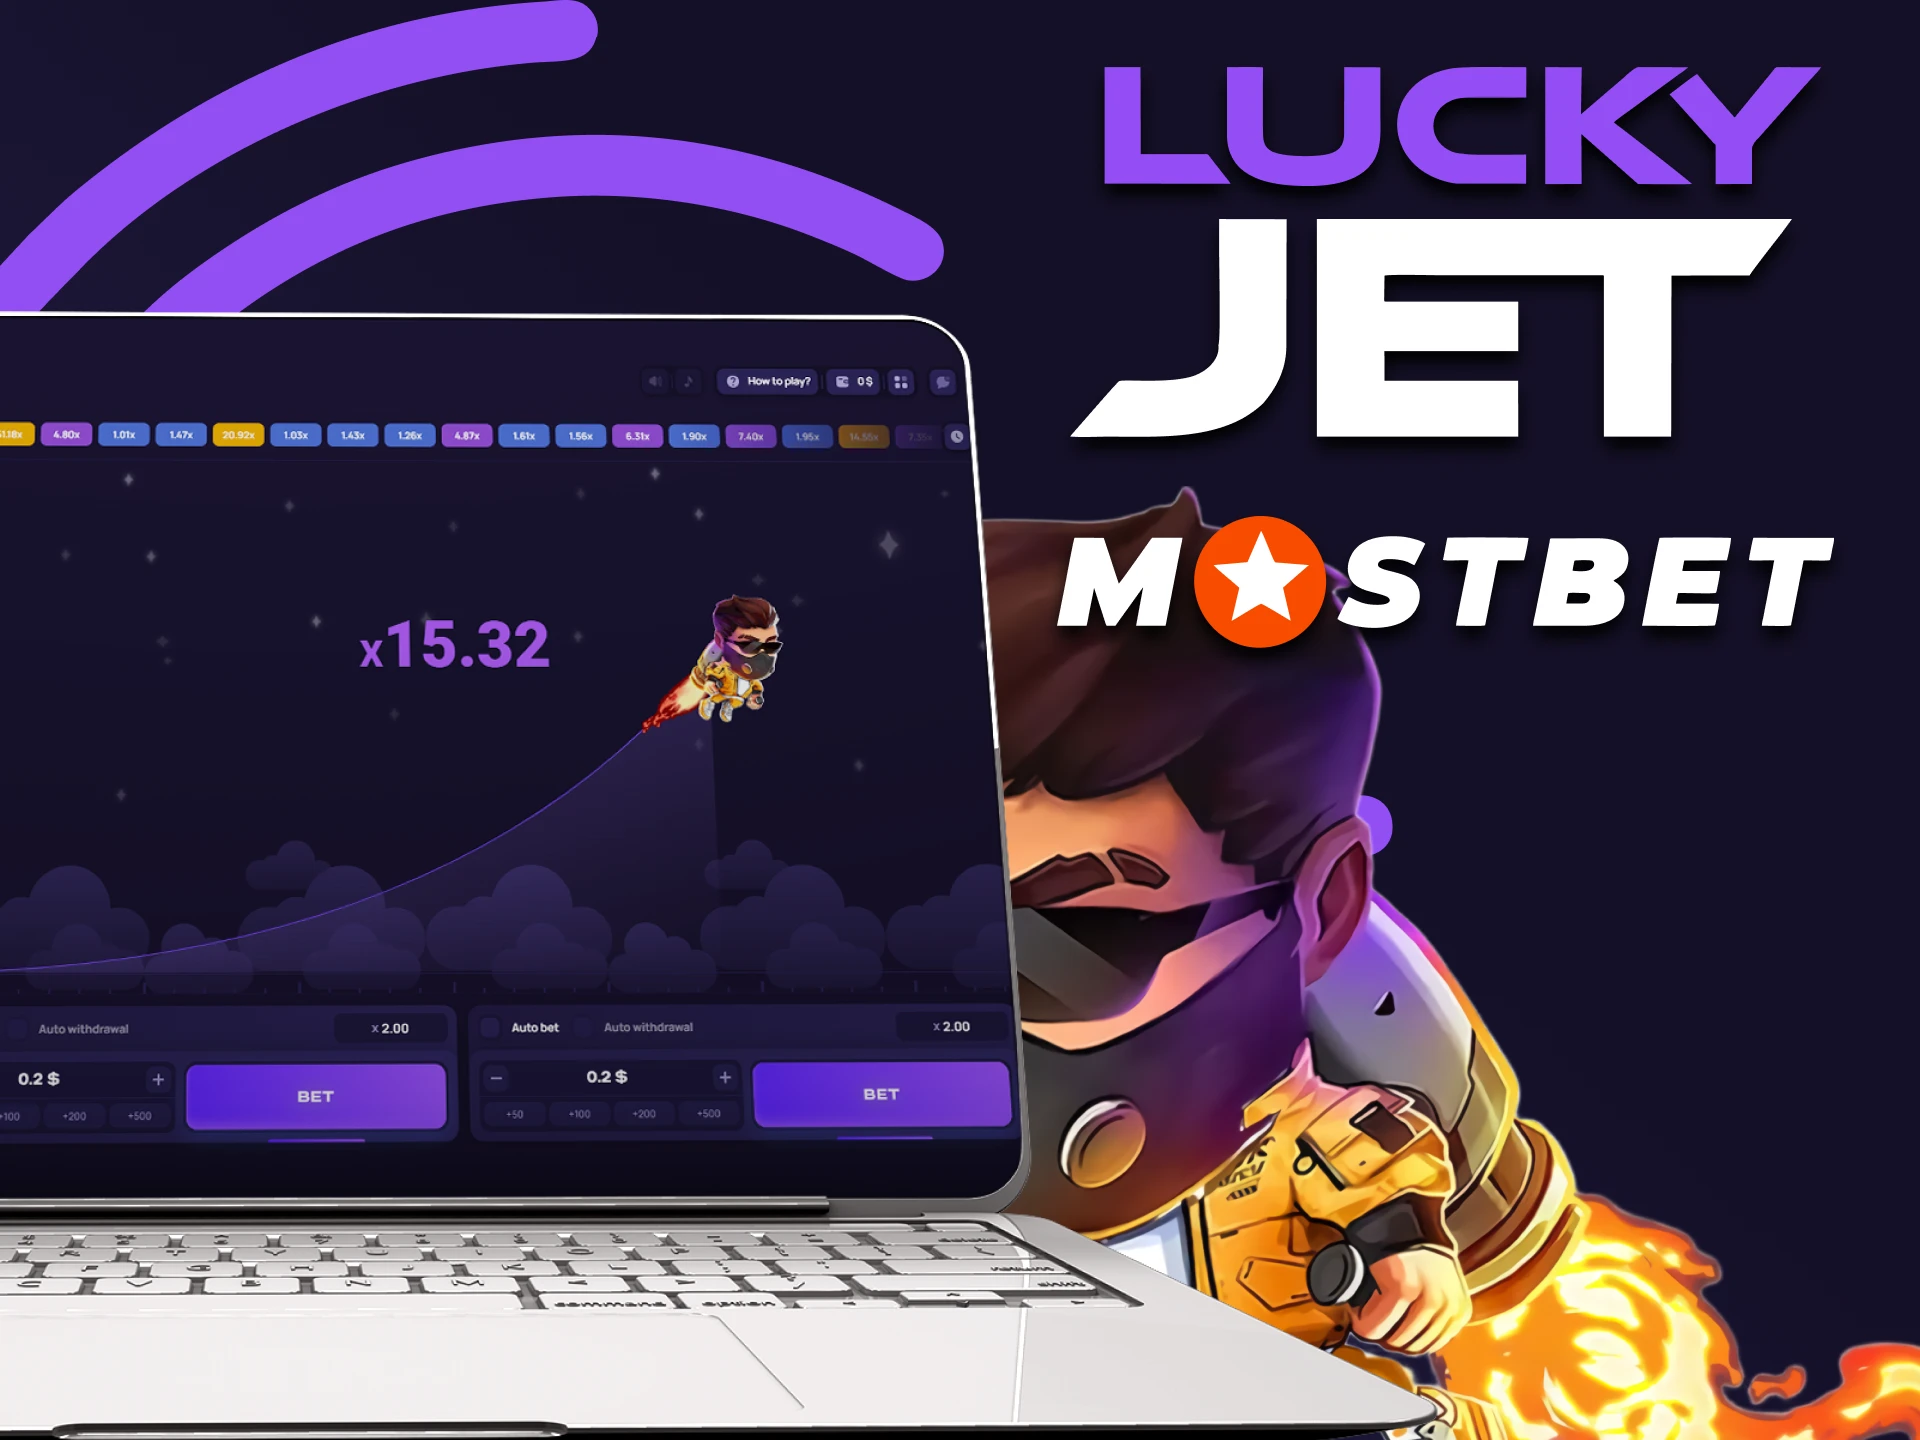 Utiliza el servicio Mostbet para jugar a Lucky Jet.